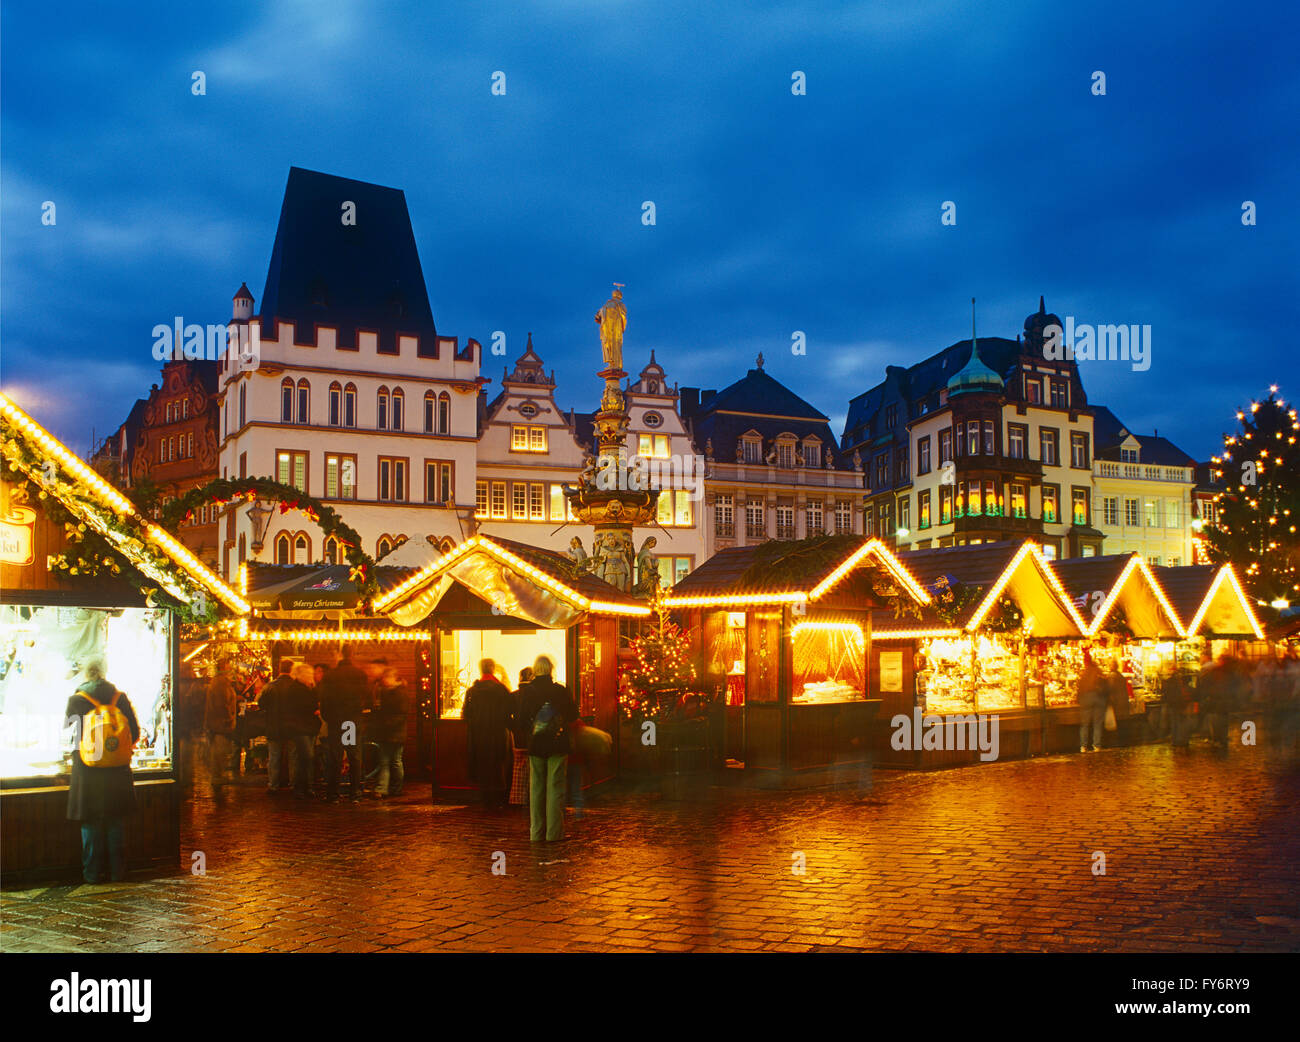 Mercado de Navidad en Tier, Market Square, Renania Palatinado, Alemania Foto de stock